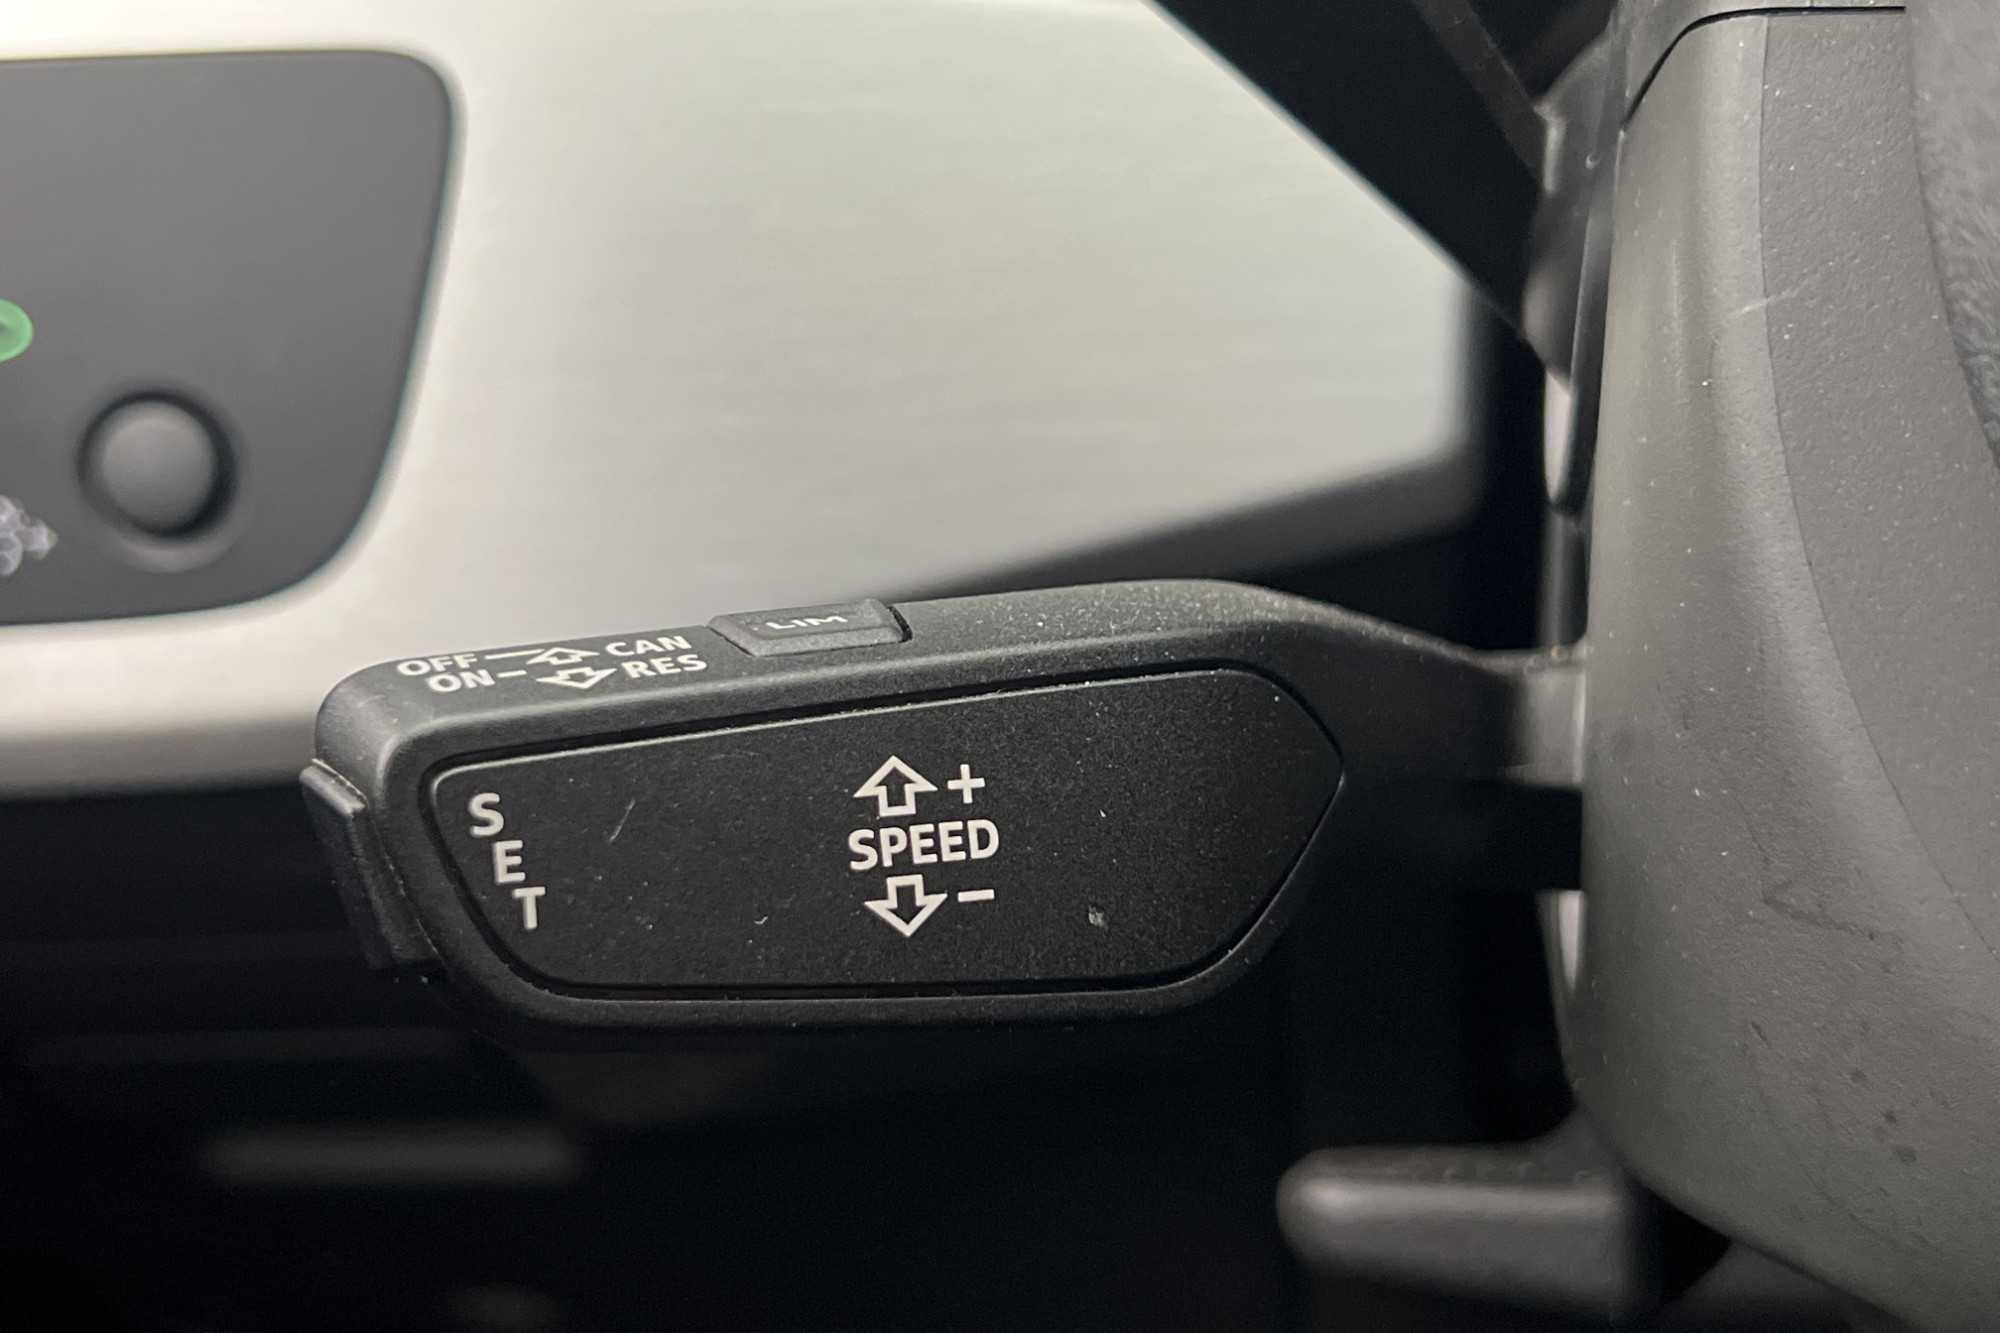 Audi A5 Coupé 2.0 TDI 190hk S-Line RS-front Cockpit Kamera 